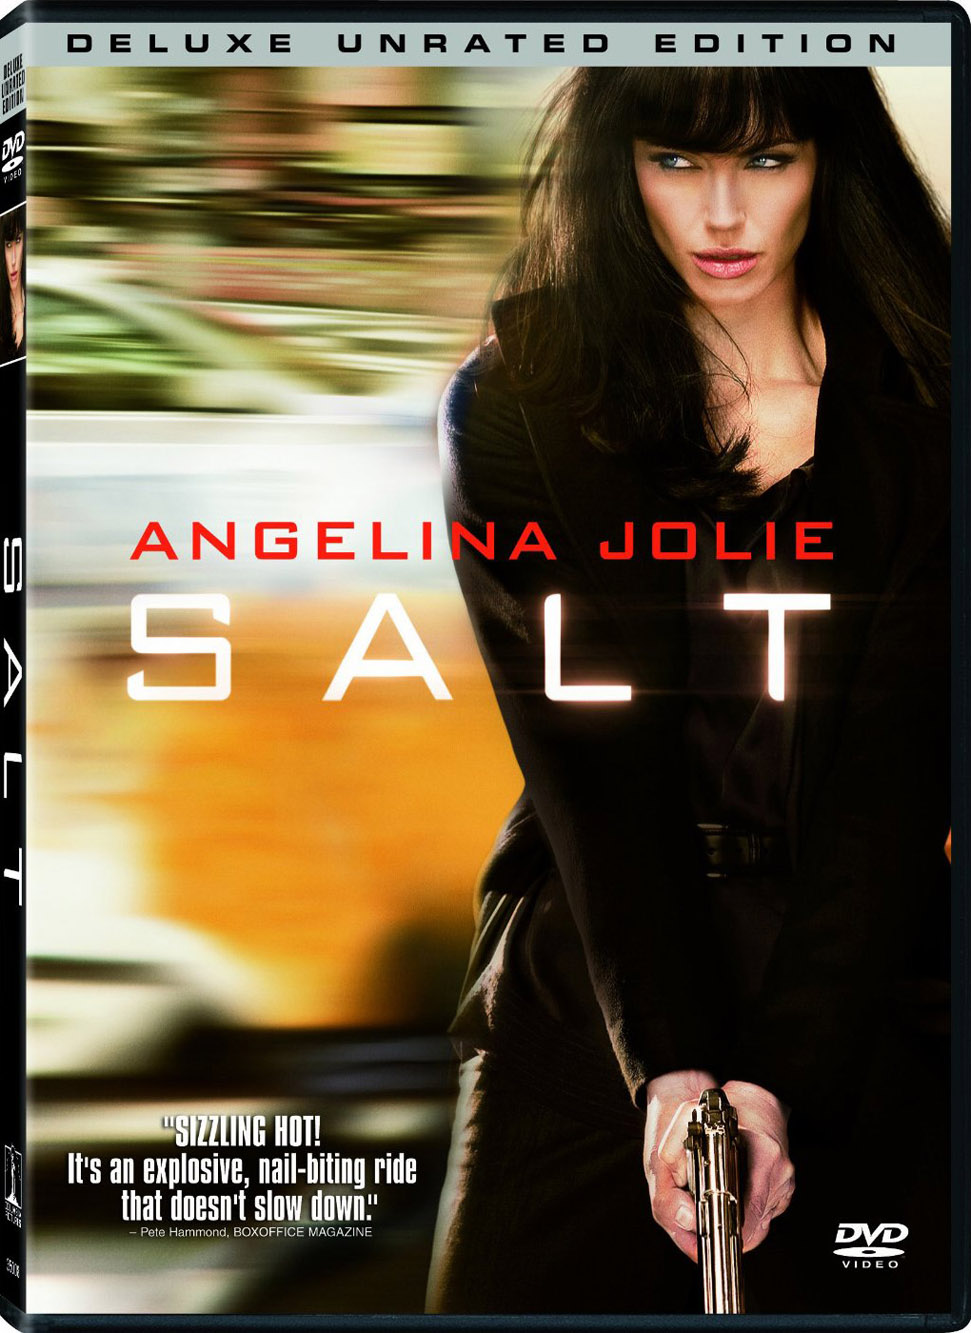 Filmes-Salt-Poster-015.jpg